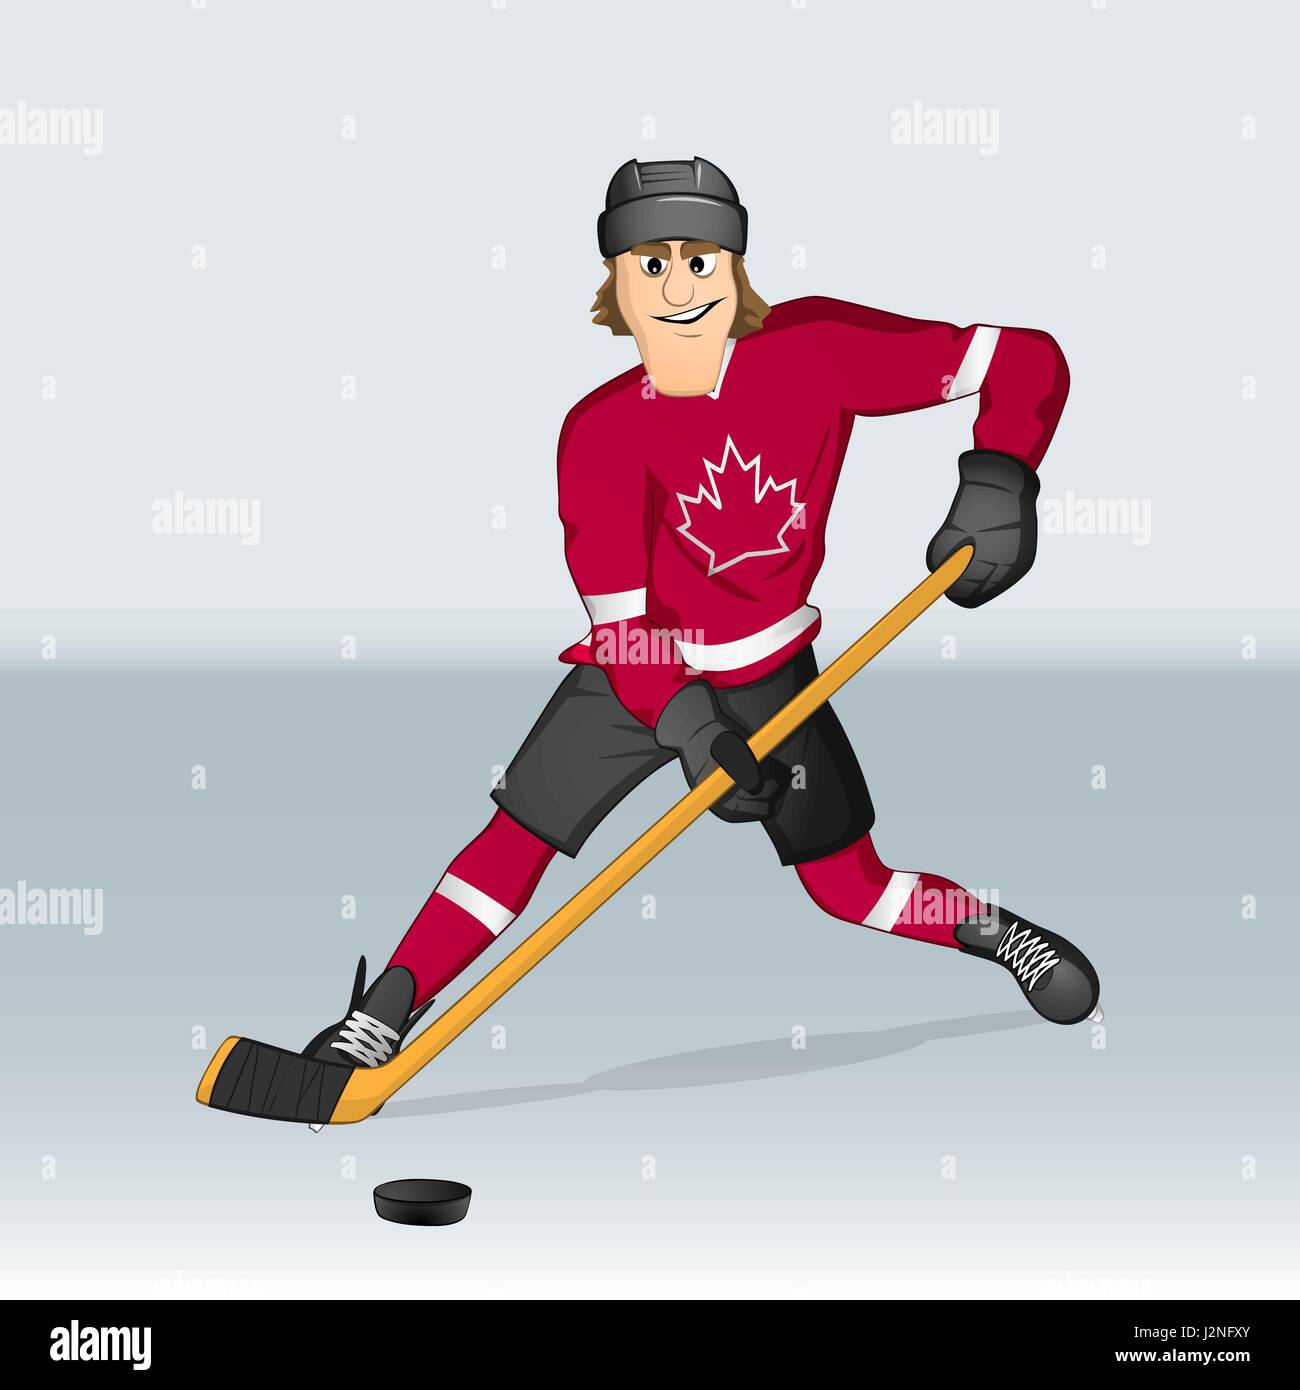 Im Cartoon-Stil gezeichnet kanadischer Eishockeyspieler und-Trainer Stock Vektor